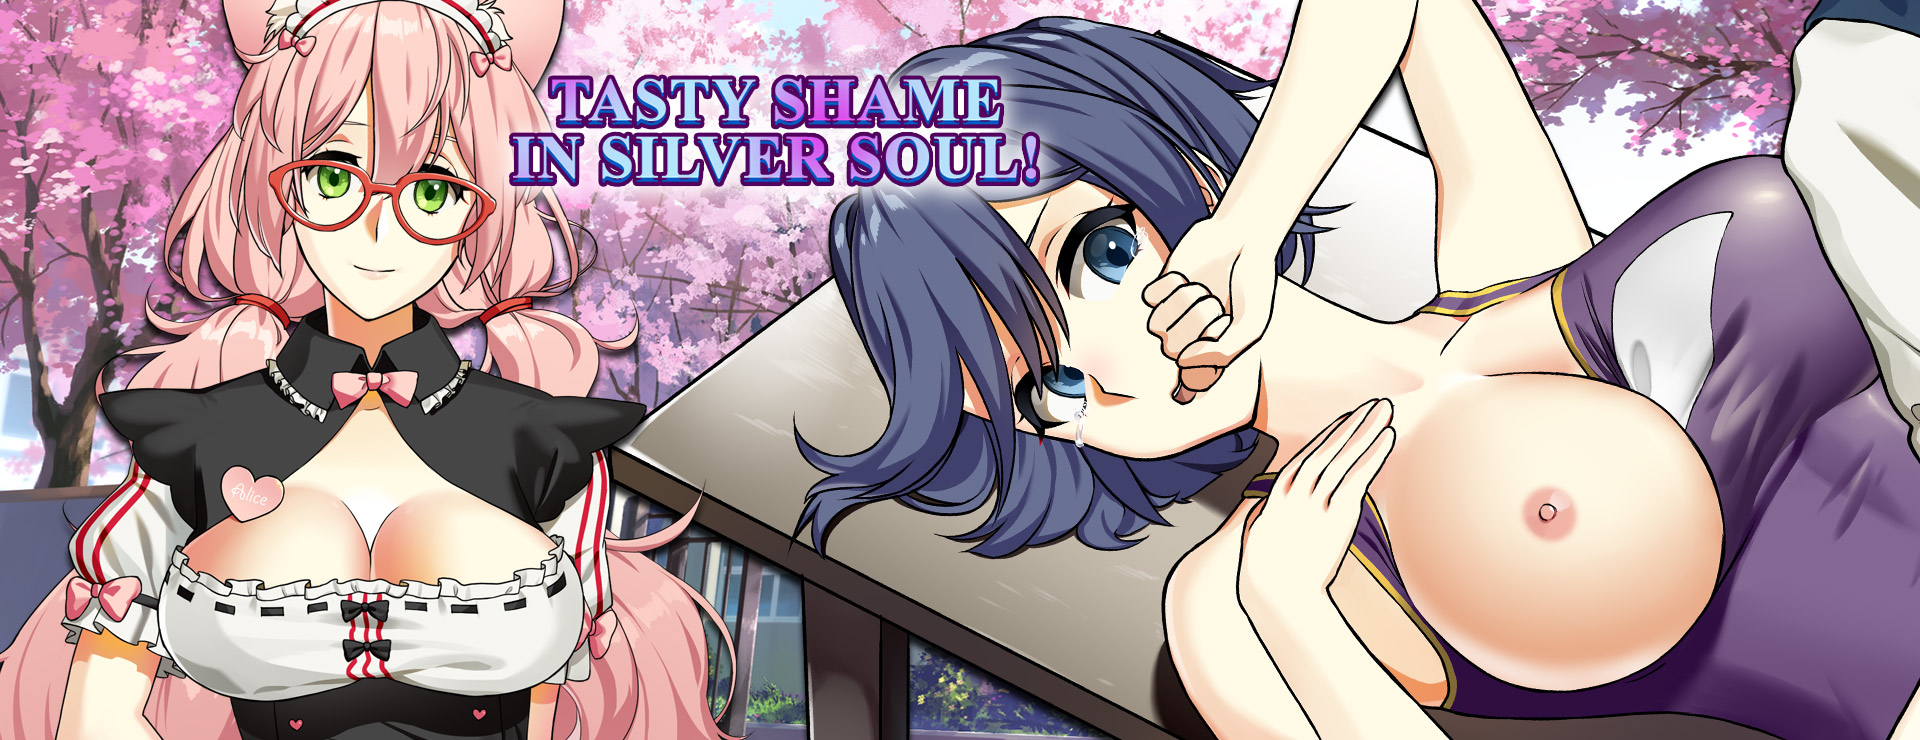 Tasty Shame in Silver Soul - Japanisches Adventure Spiel